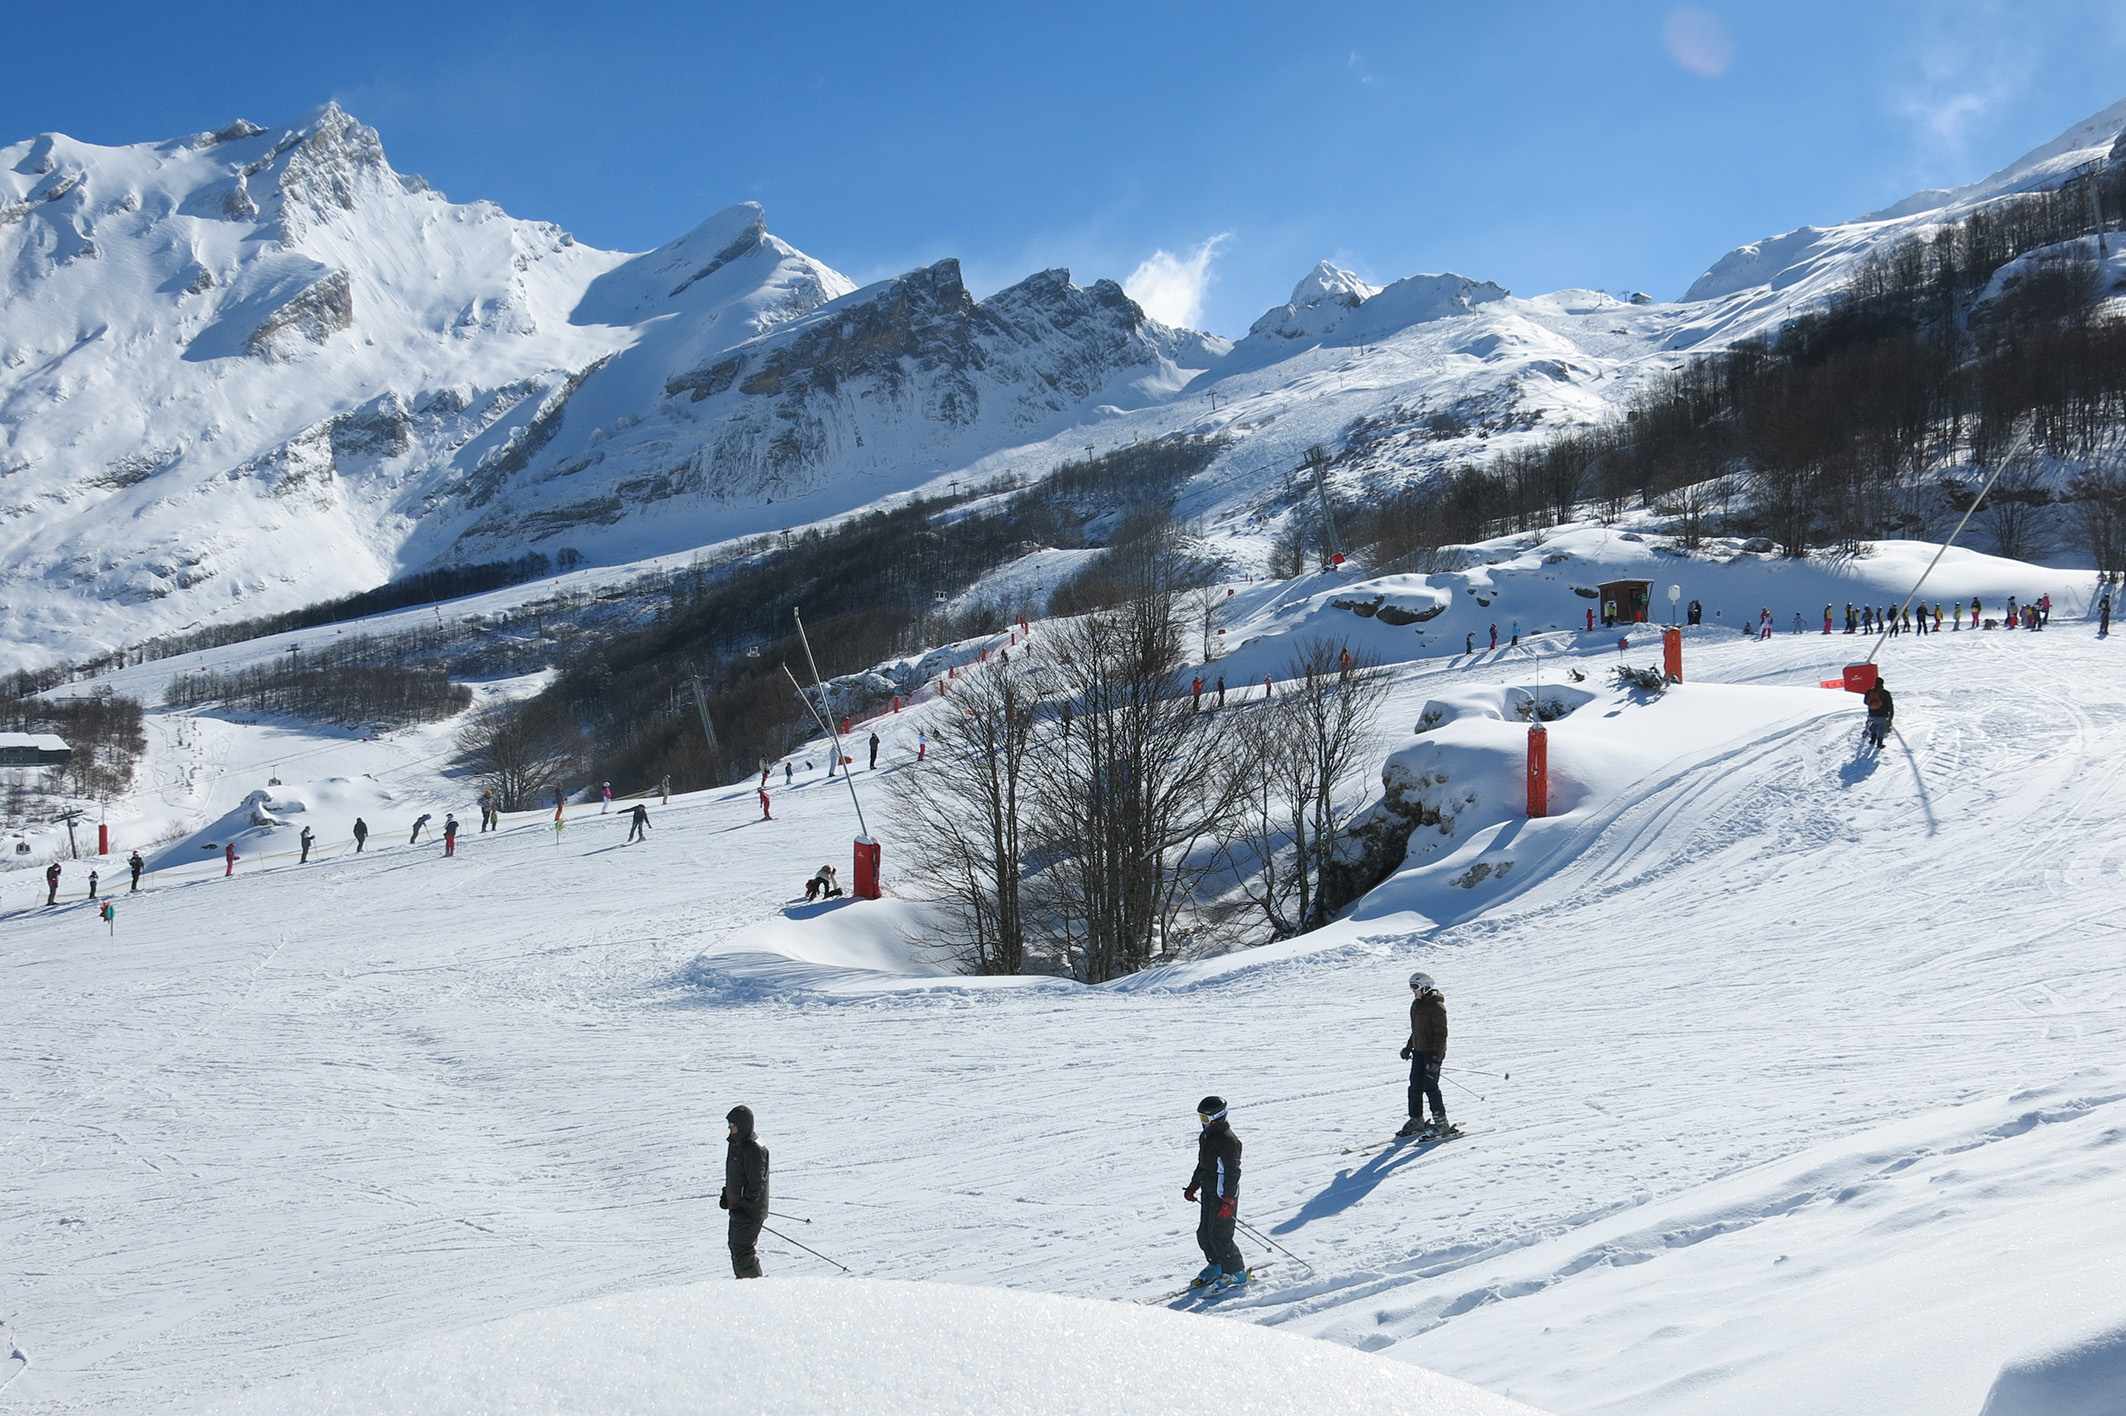 Las nevadas dejan las 9 estaciones abiertas del Pirineo francés en excelentes condiciones